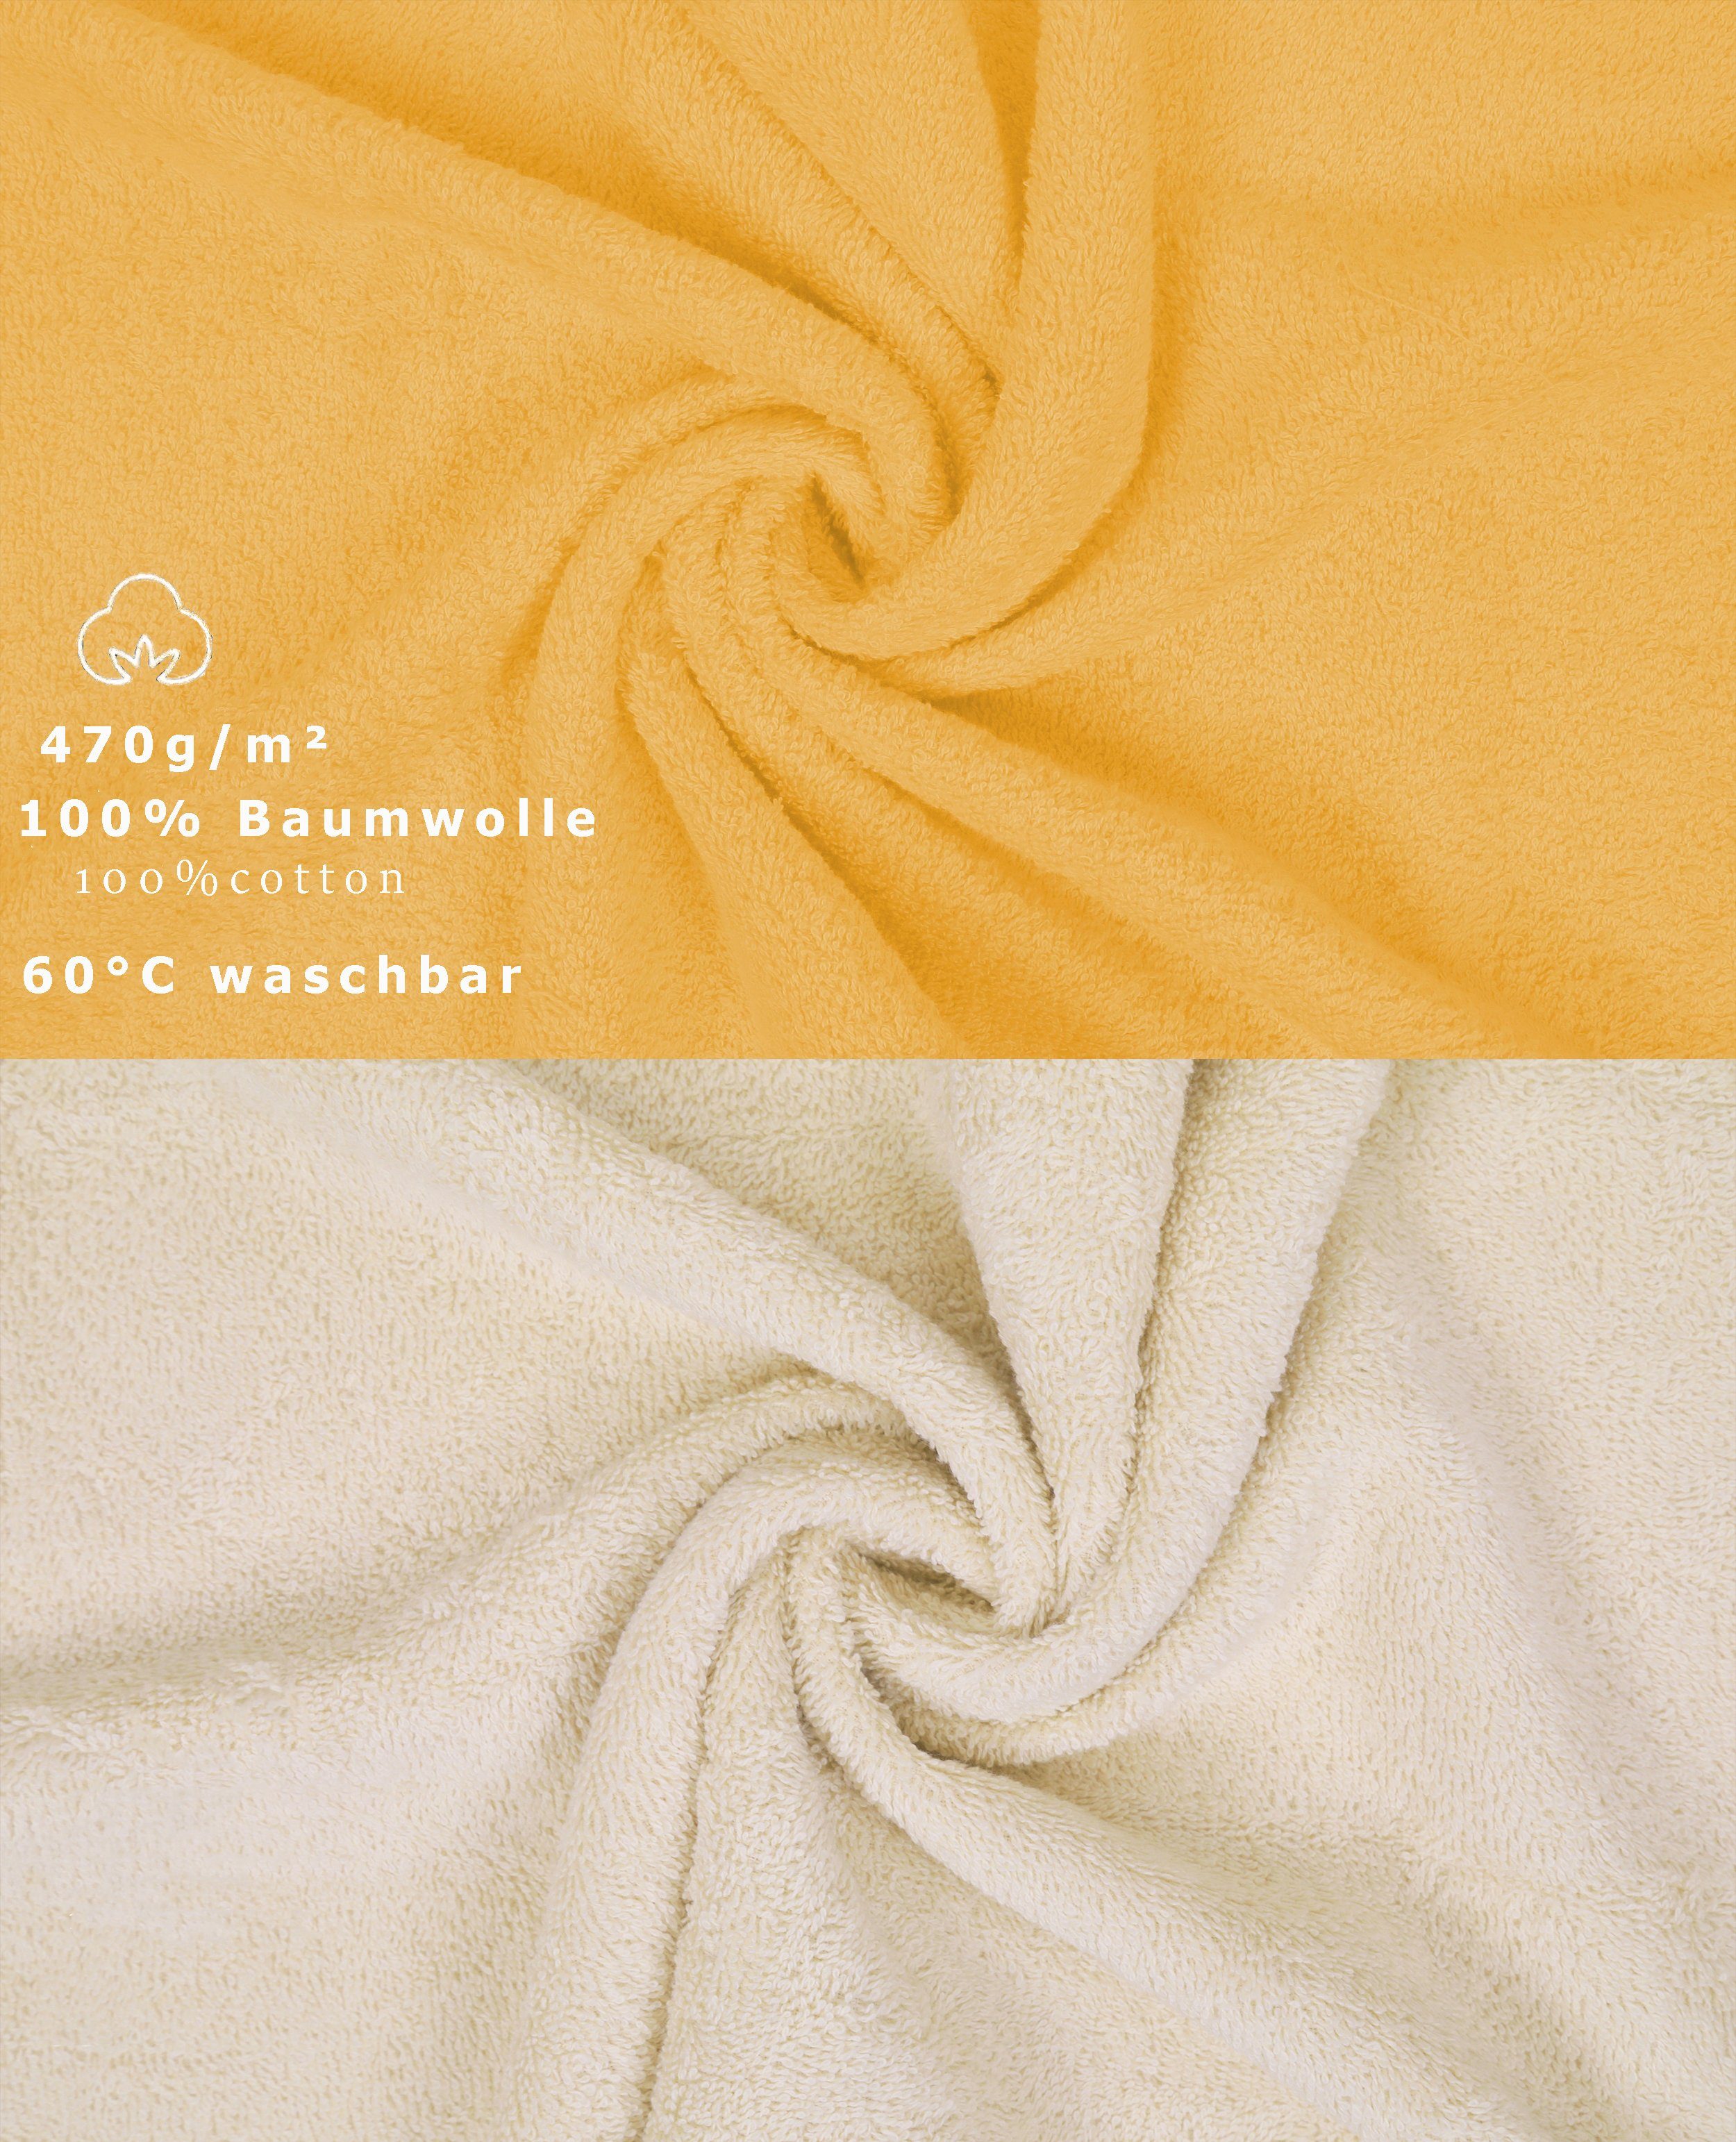 Betz Handtuch 100% Handtuch Set 12-tlg. Set Premium (12-tlg) Baumwolle, Farbe honiggelb/Sand